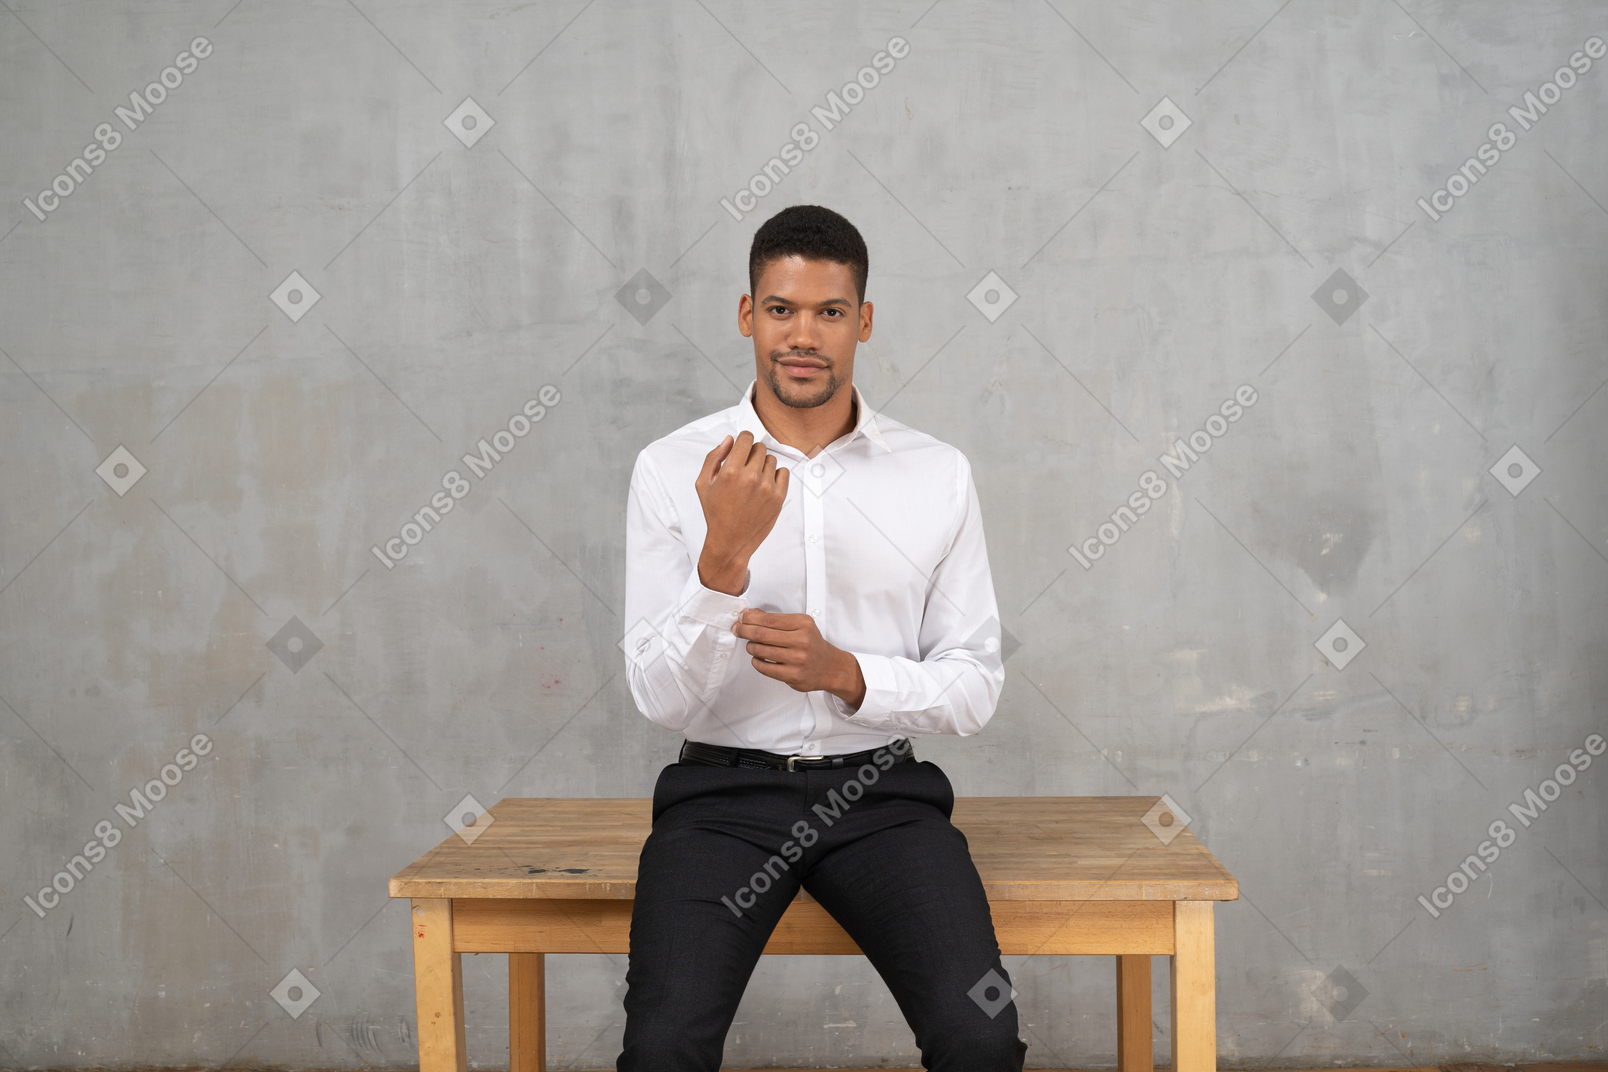 Hombre sonriente con ropa de oficina arreglándose el puño